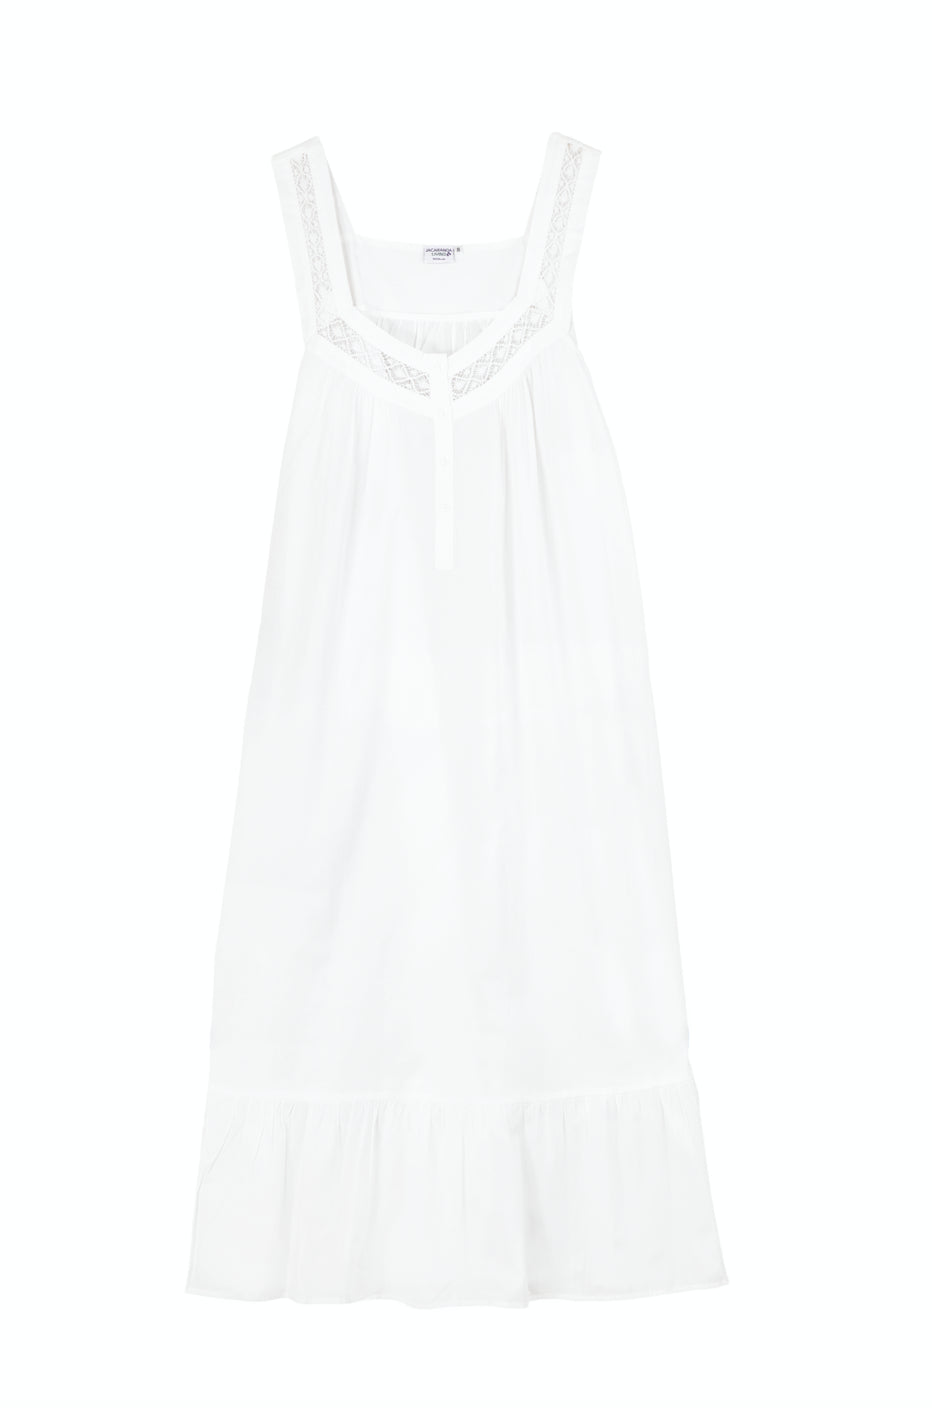 Courtney White Cotton Nightgown